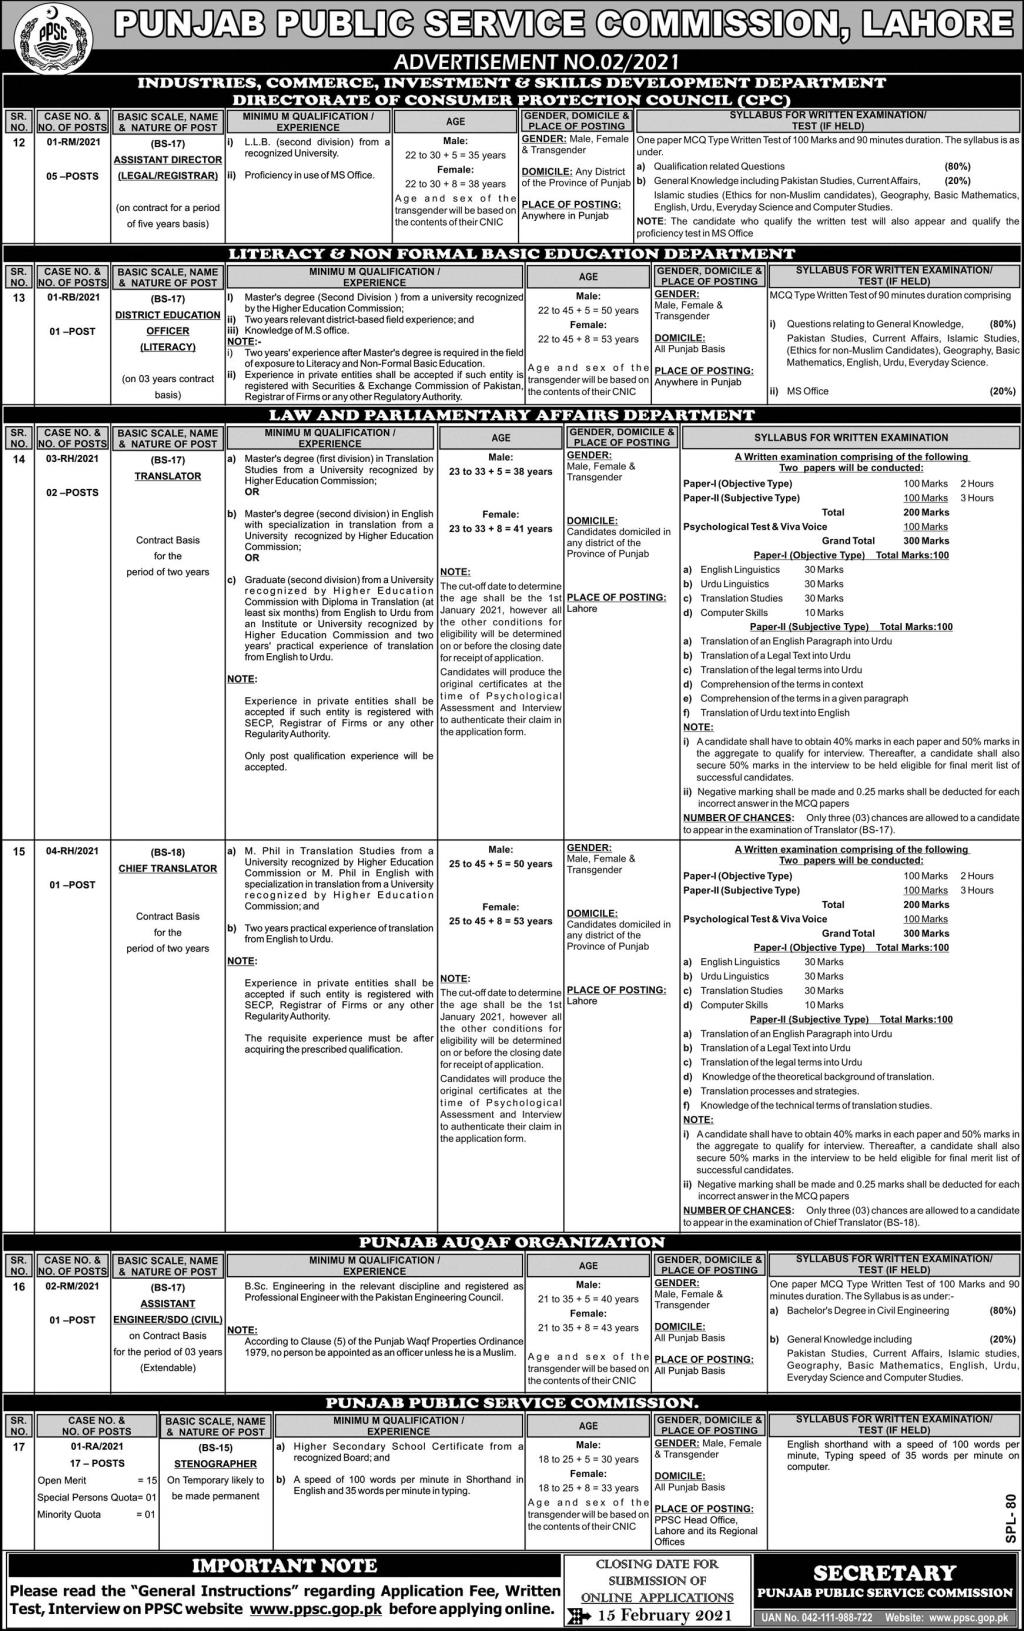 Punjab Public Service Commission PPSC Jobs 2023